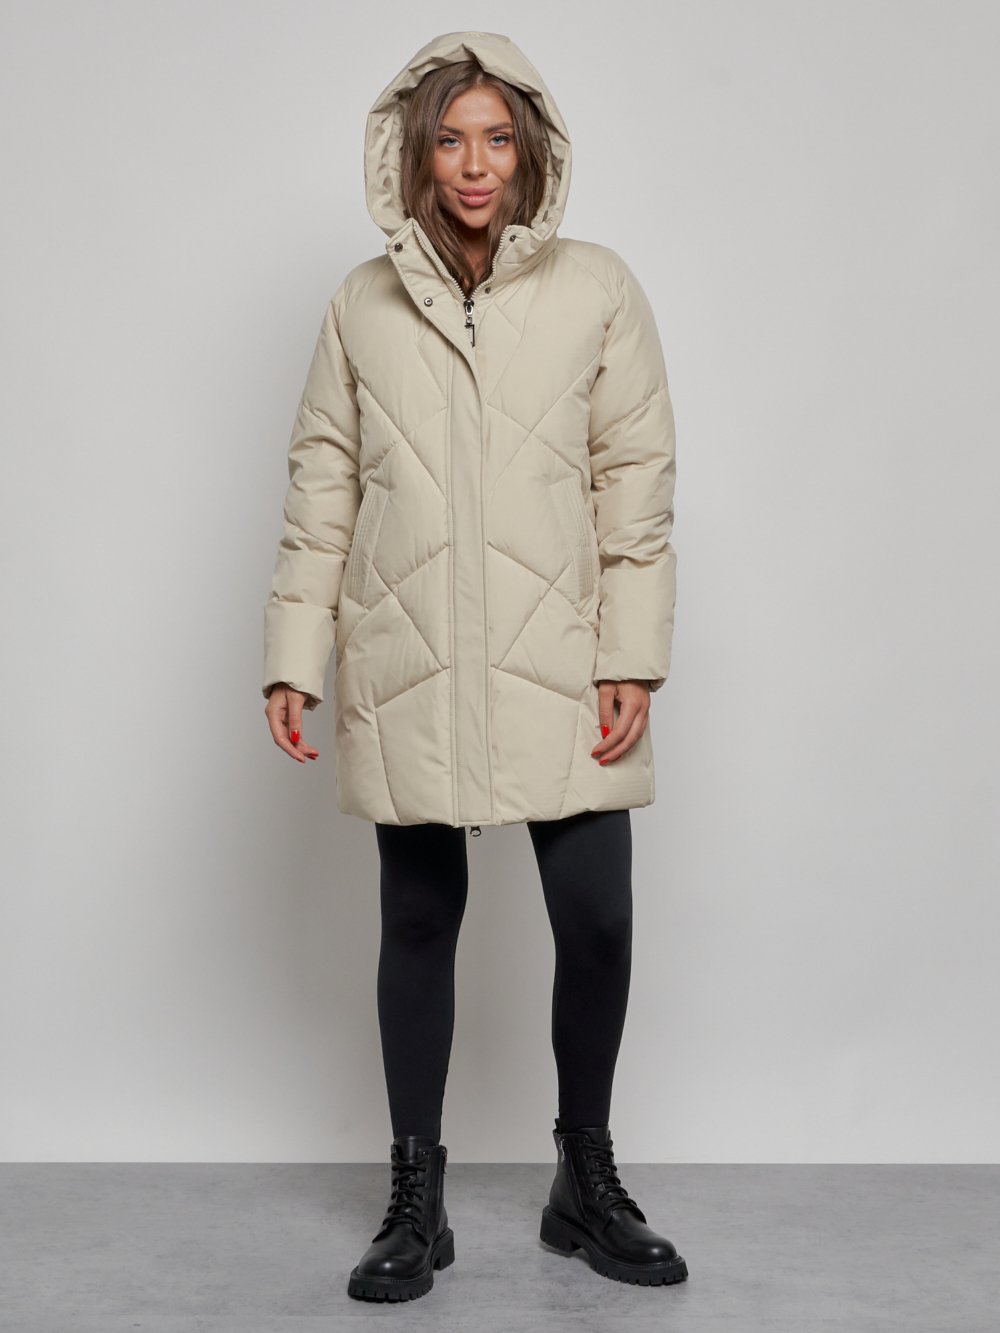 Купить куртку женскую оптом от производителя недорого в Москве 52361B 1